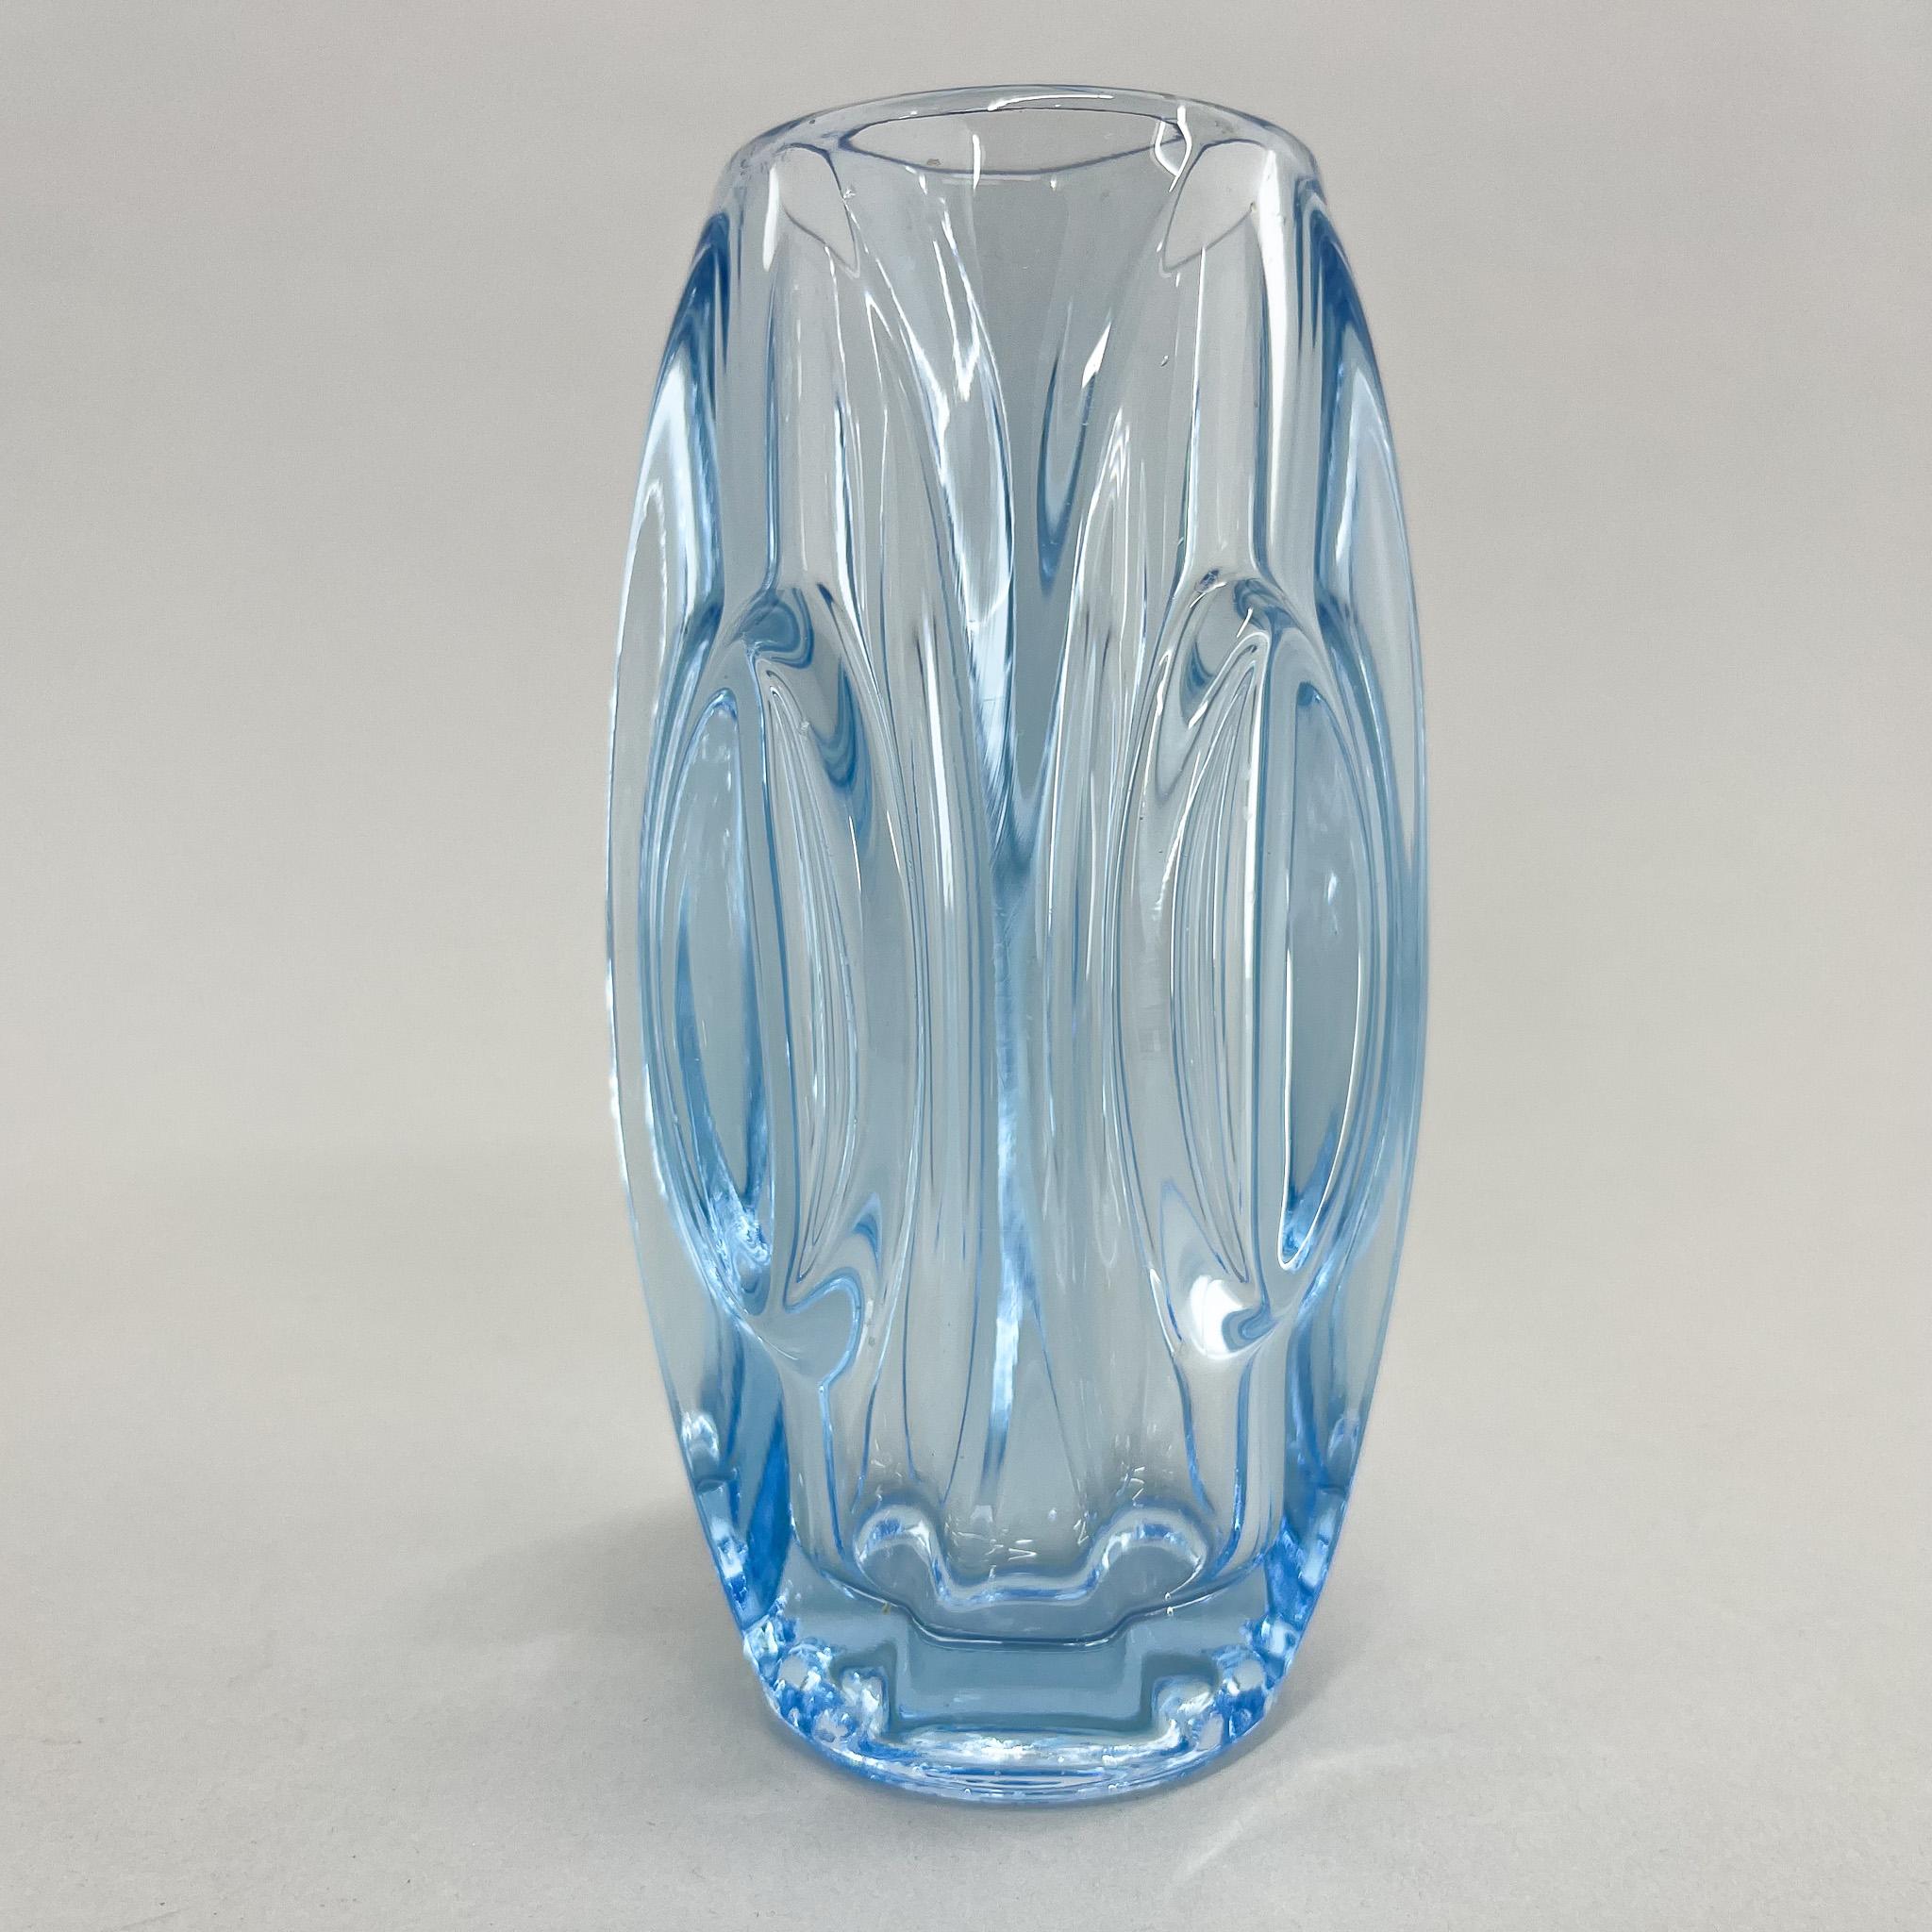 Kleine blaue Vase aus Pressglas, entworfen von Rudolf Schrötter um 1955 und hergestellt von der Glashütte Rosice (Teil der SkLO Union) in der ehemaligen Tschechoslowakei.